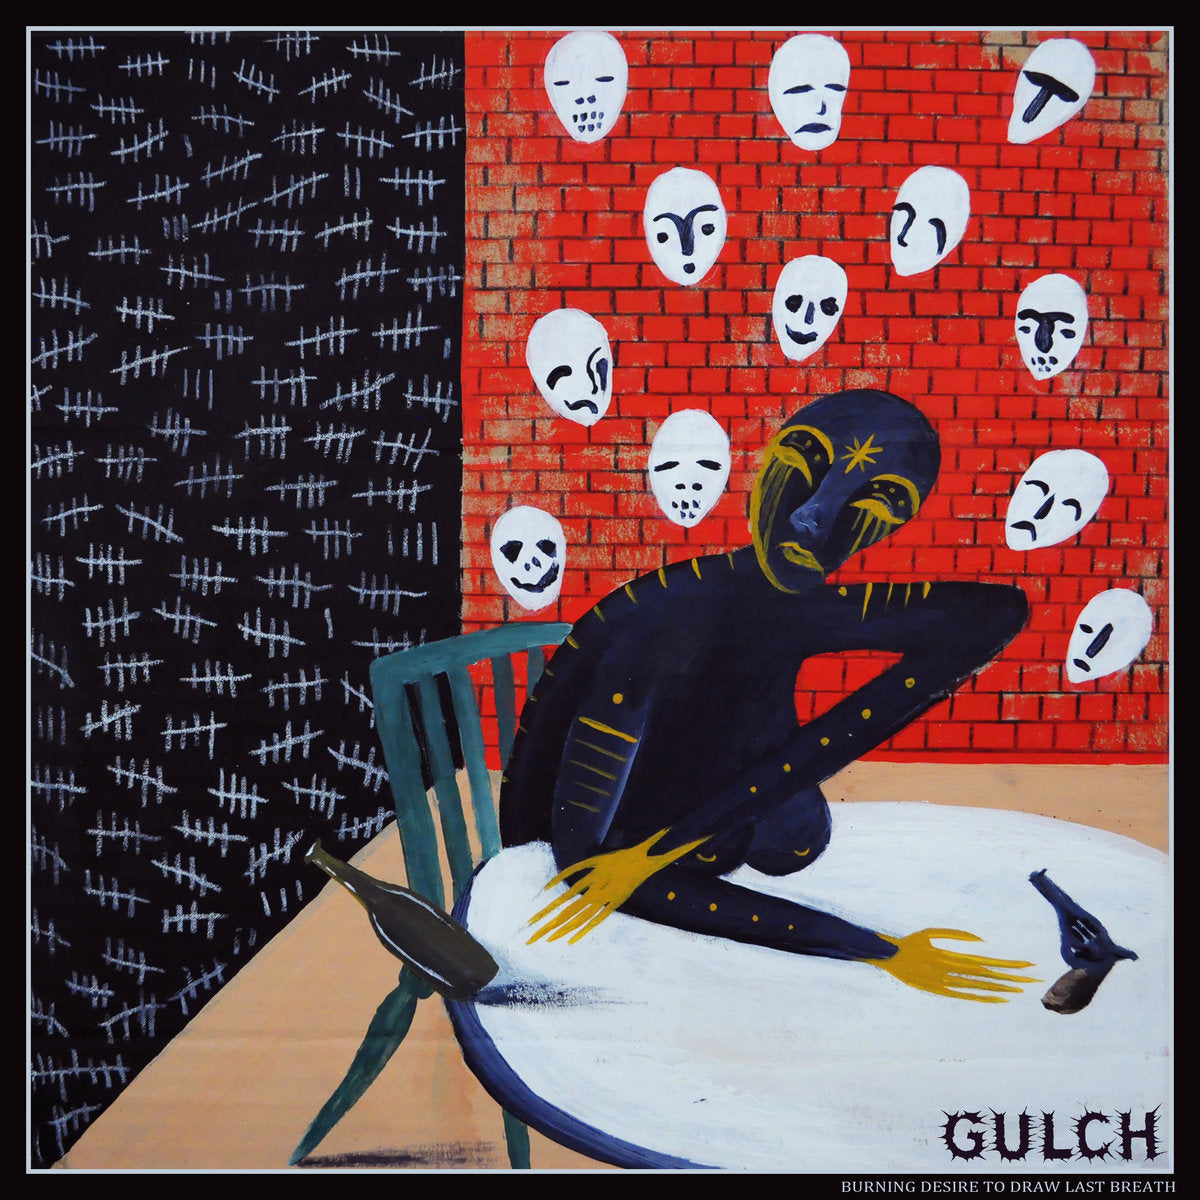 Gulch  "Burning Desire to Draw Last Breath" LP